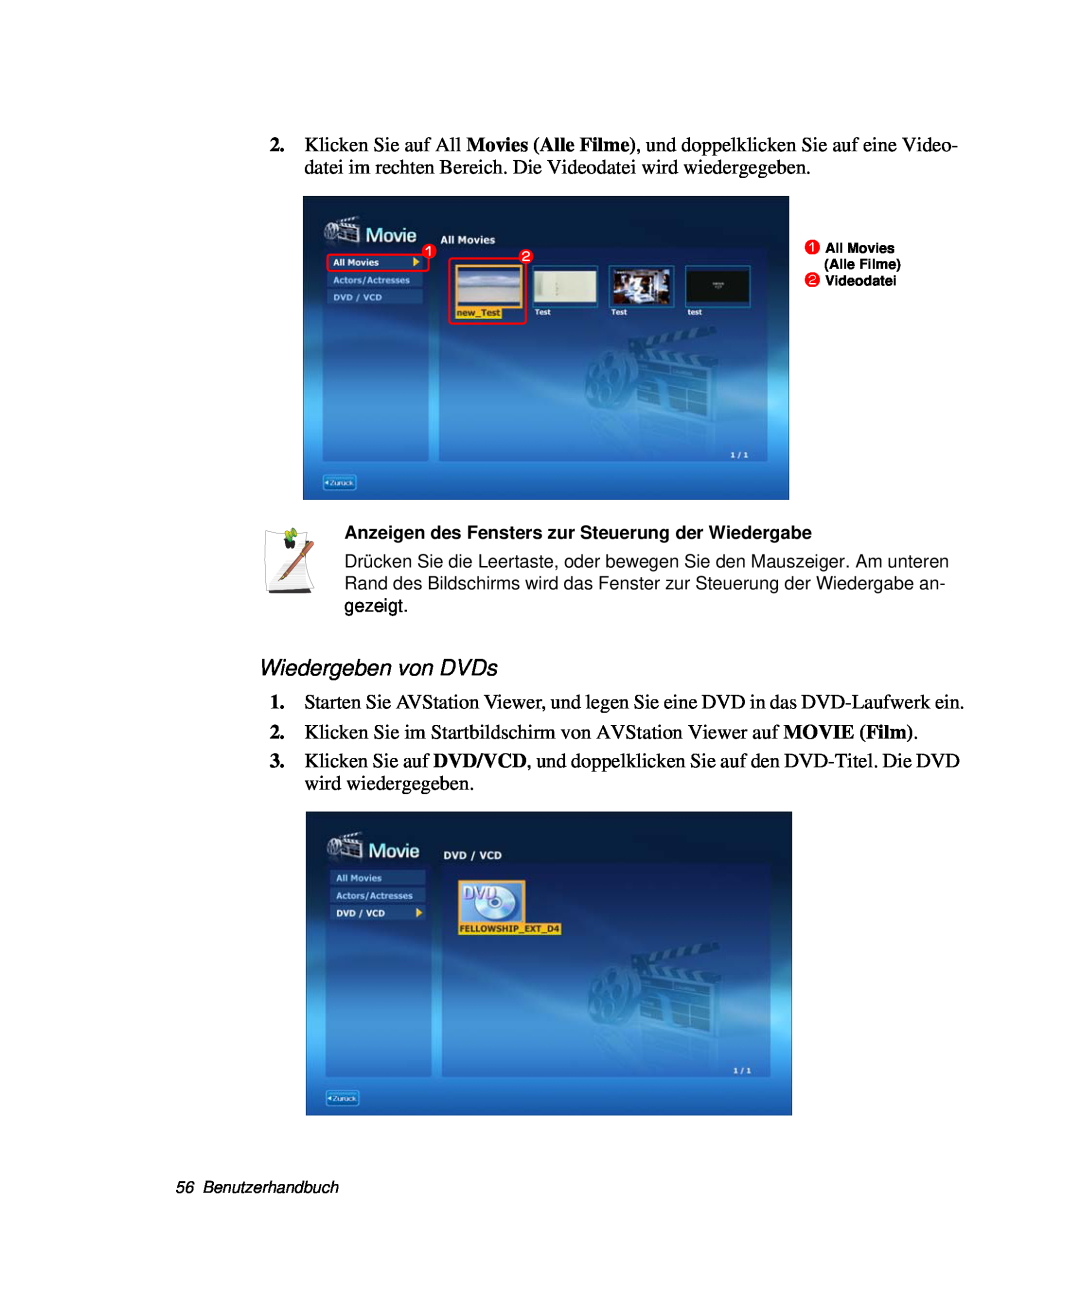 Samsung NP-R40FY01/SEG manual Wiedergeben von DVDs, Klicken Sie im Startbildschirm von AVStation Viewer auf MOVIE Film 